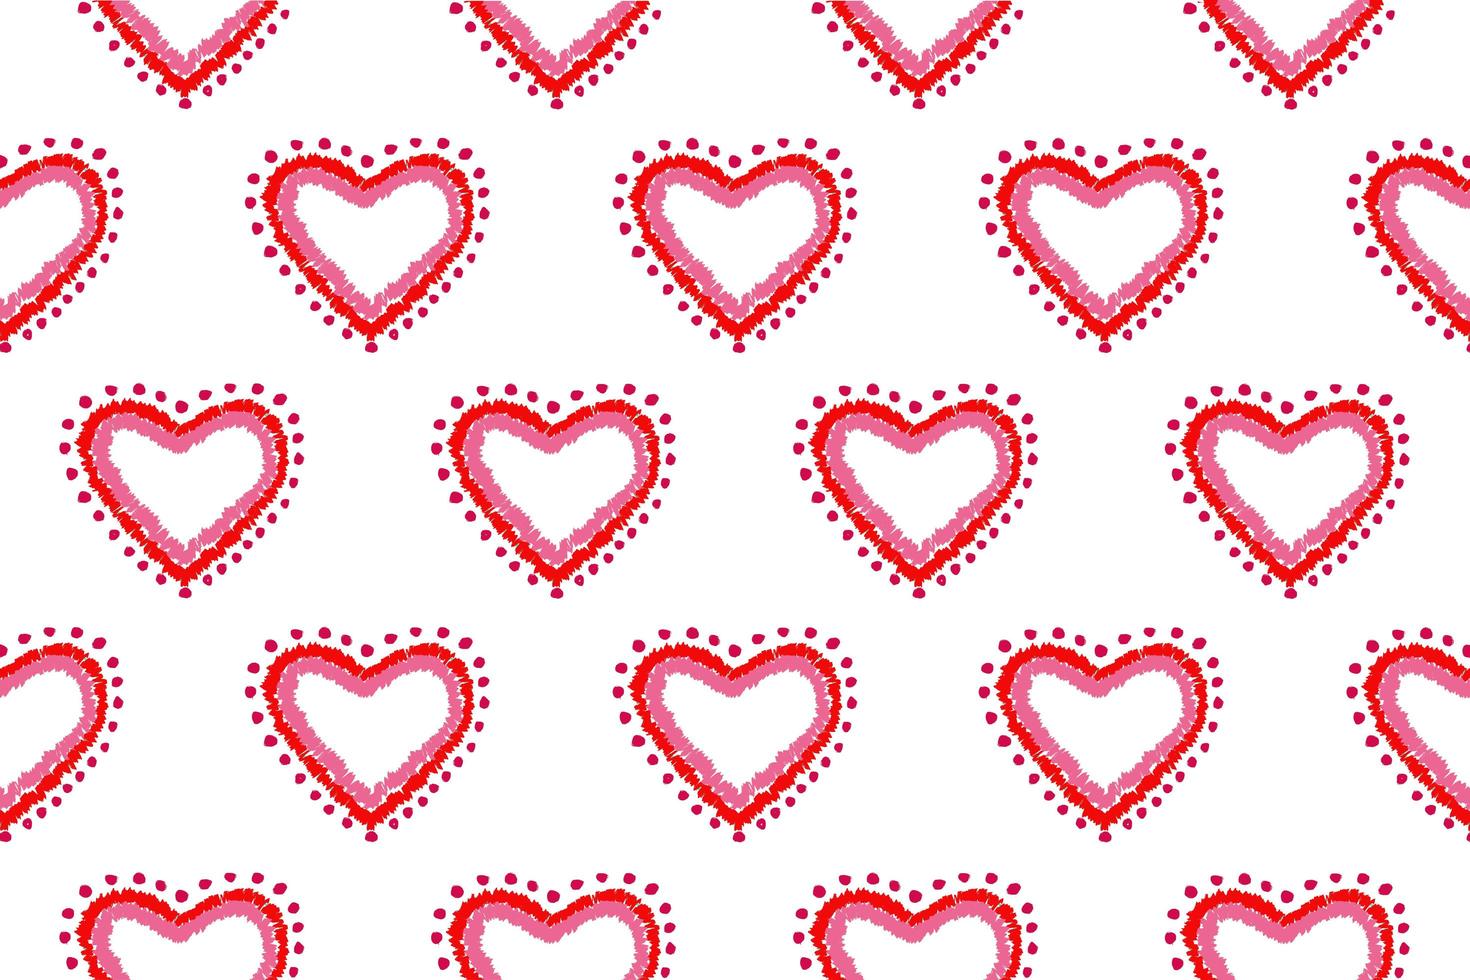 patroon van uit de vrije hand schets vorm hart, kleurrijke rood roze kleur ontwerpelementen geïsoleerd op een witte achtergrond, symbool liefde valentijn dag, textielstof foto